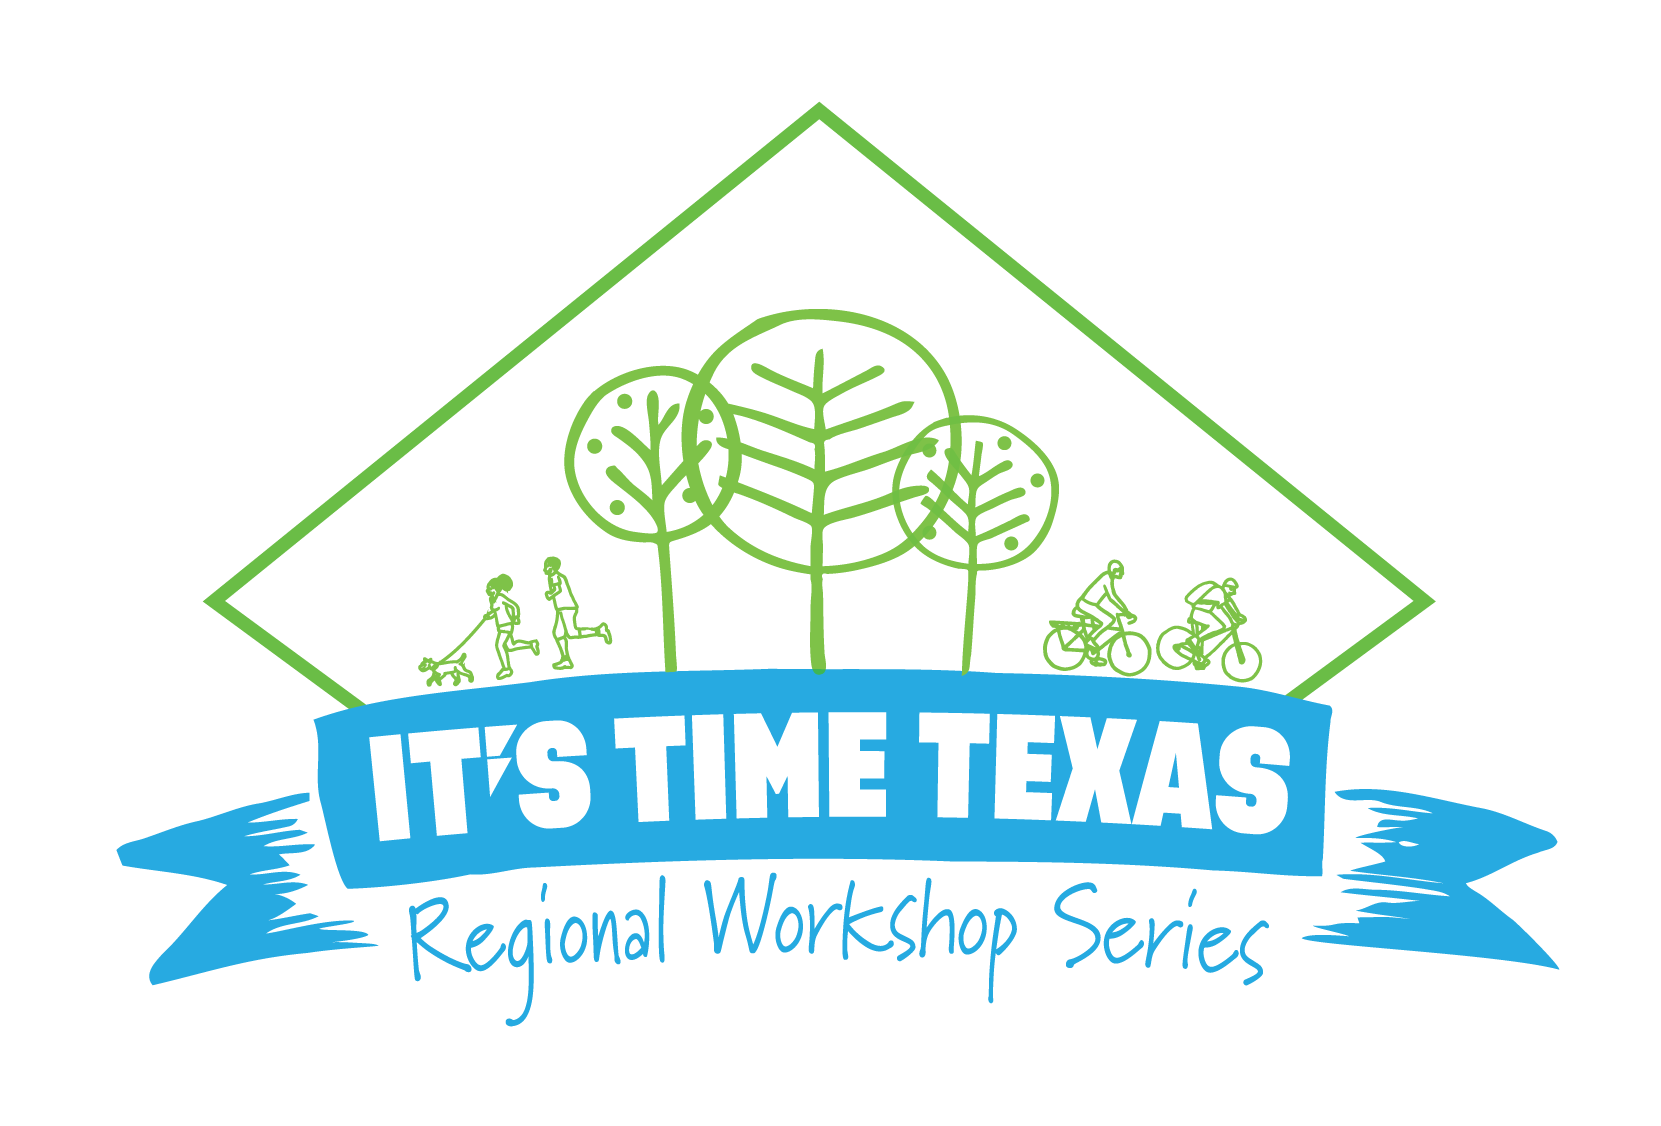 It's Time Texas Regional Workshop Series